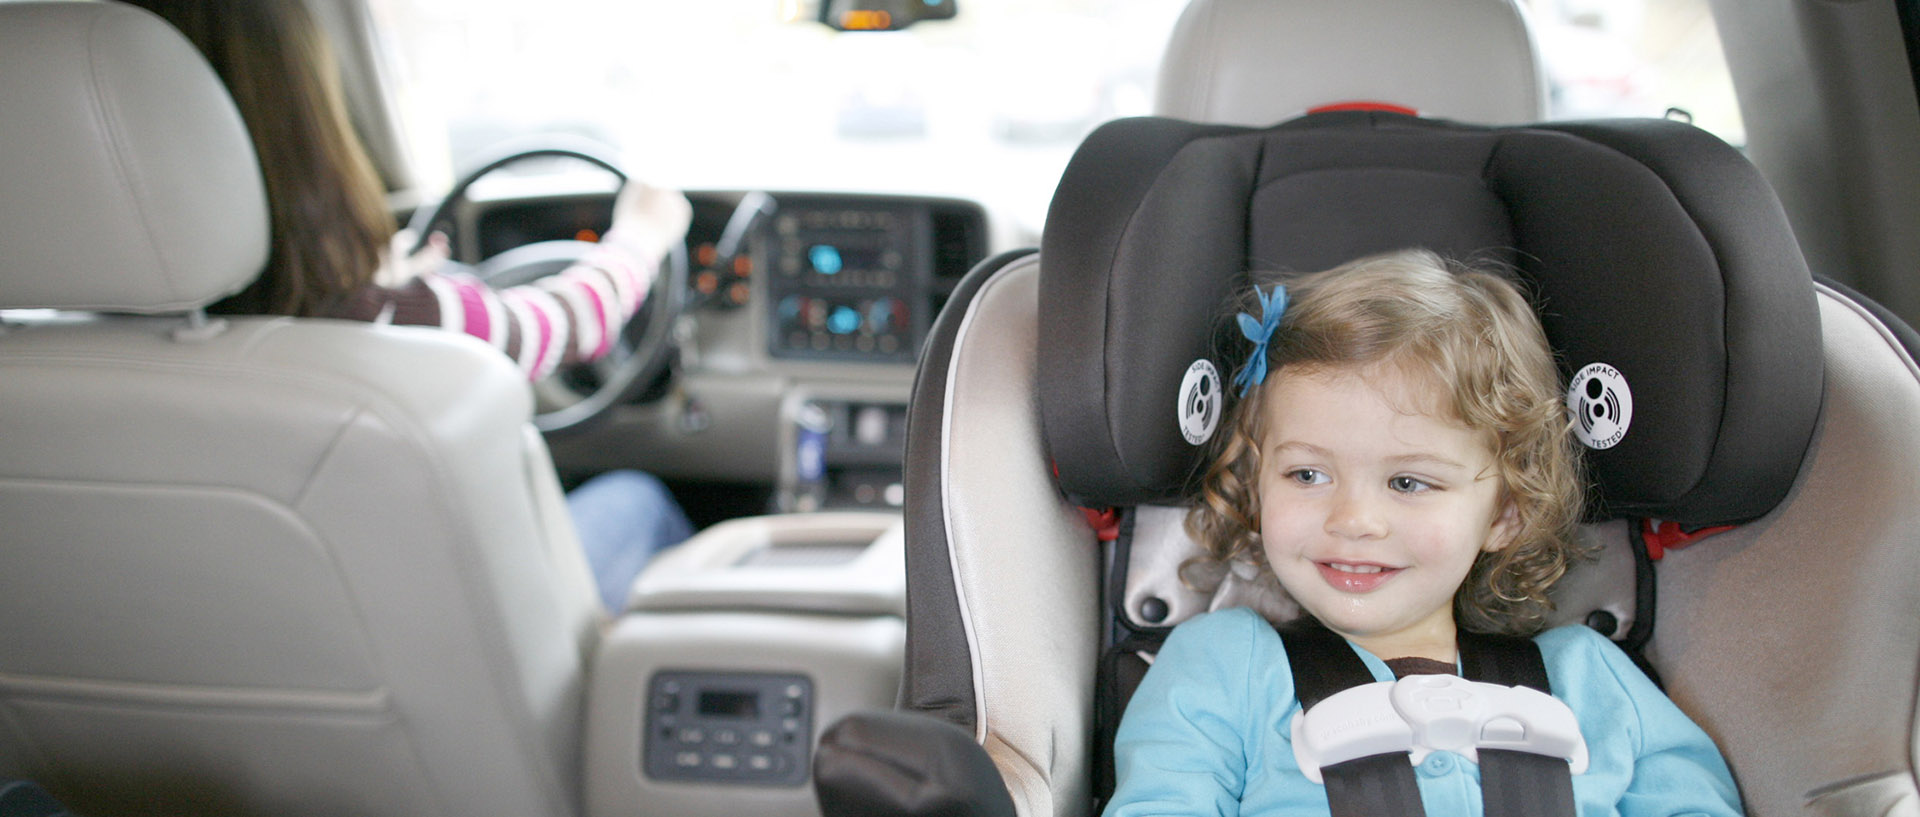 Η ασφαλής τοποθέτηση ενός βρεφικού-παιδικού καθίσματος μέσα στο αυτοκίνητο